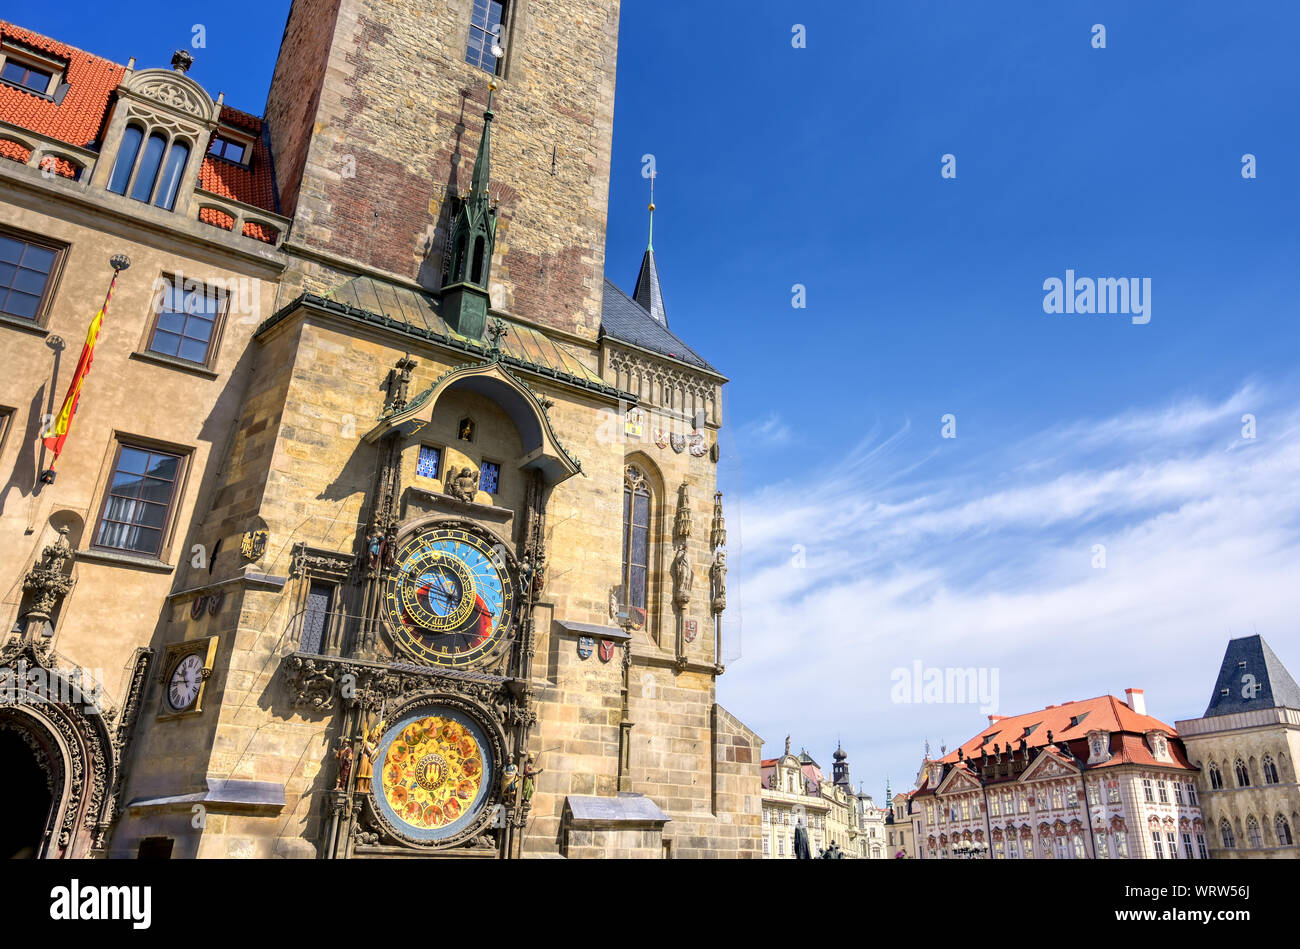 El Reloj Astronómico de Praga situado en el Ayuntamiento de la Ciudad Vieja en Praga, República Checa. Foto de stock